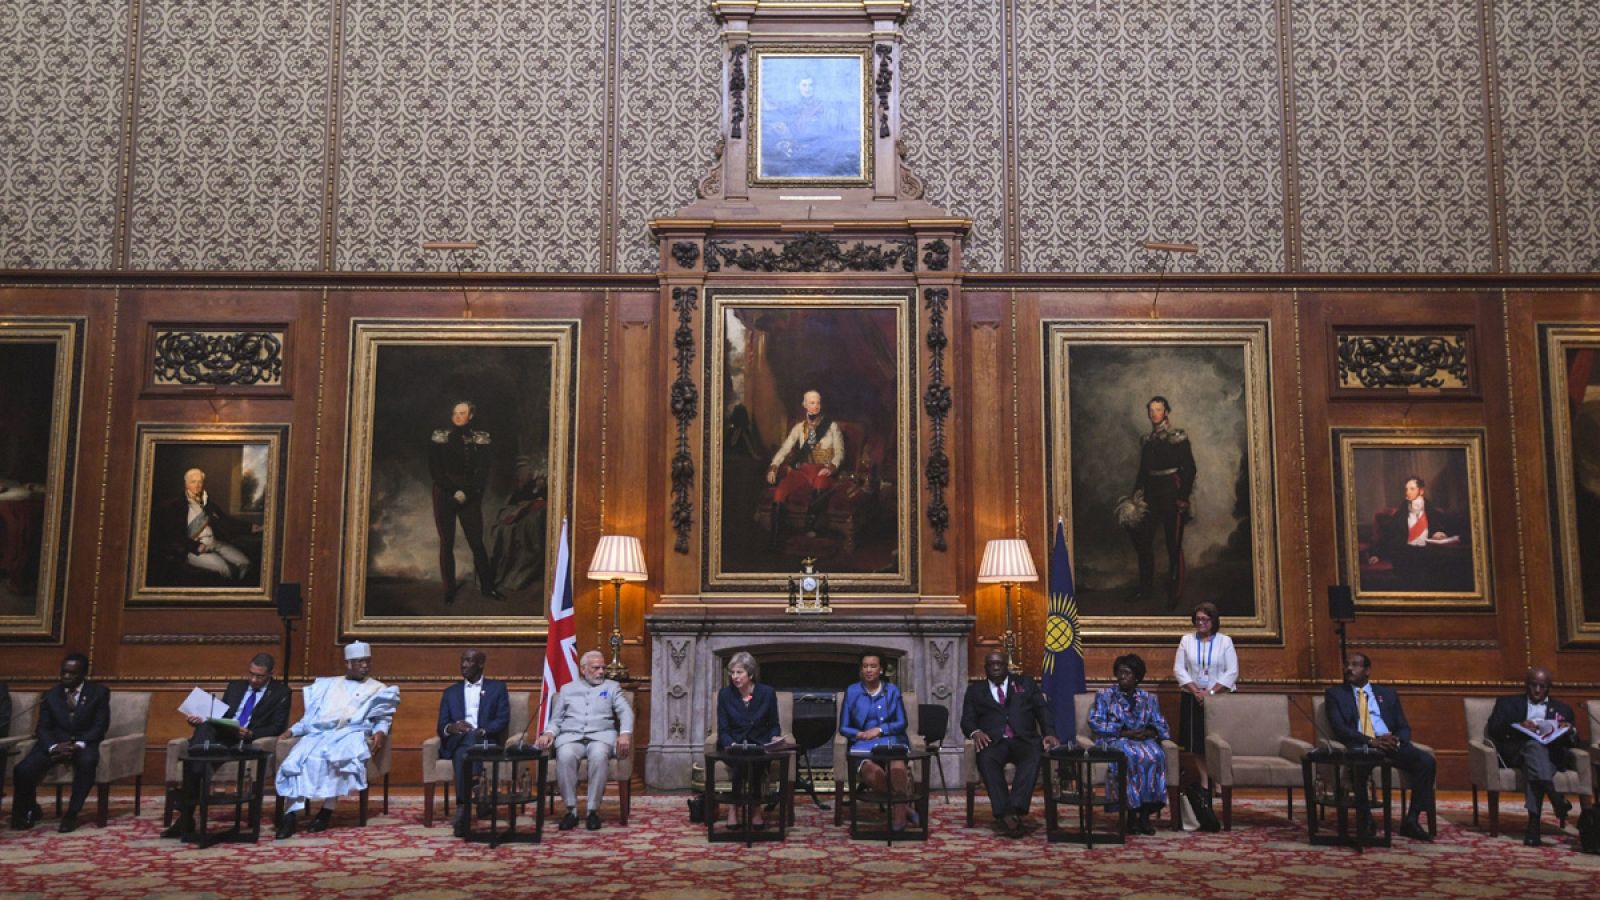 Reunión de Jefes de Gobierno de la Mancomunidad de Naciones celebrada en la Cámara Waterloo del Castillo de Windsor